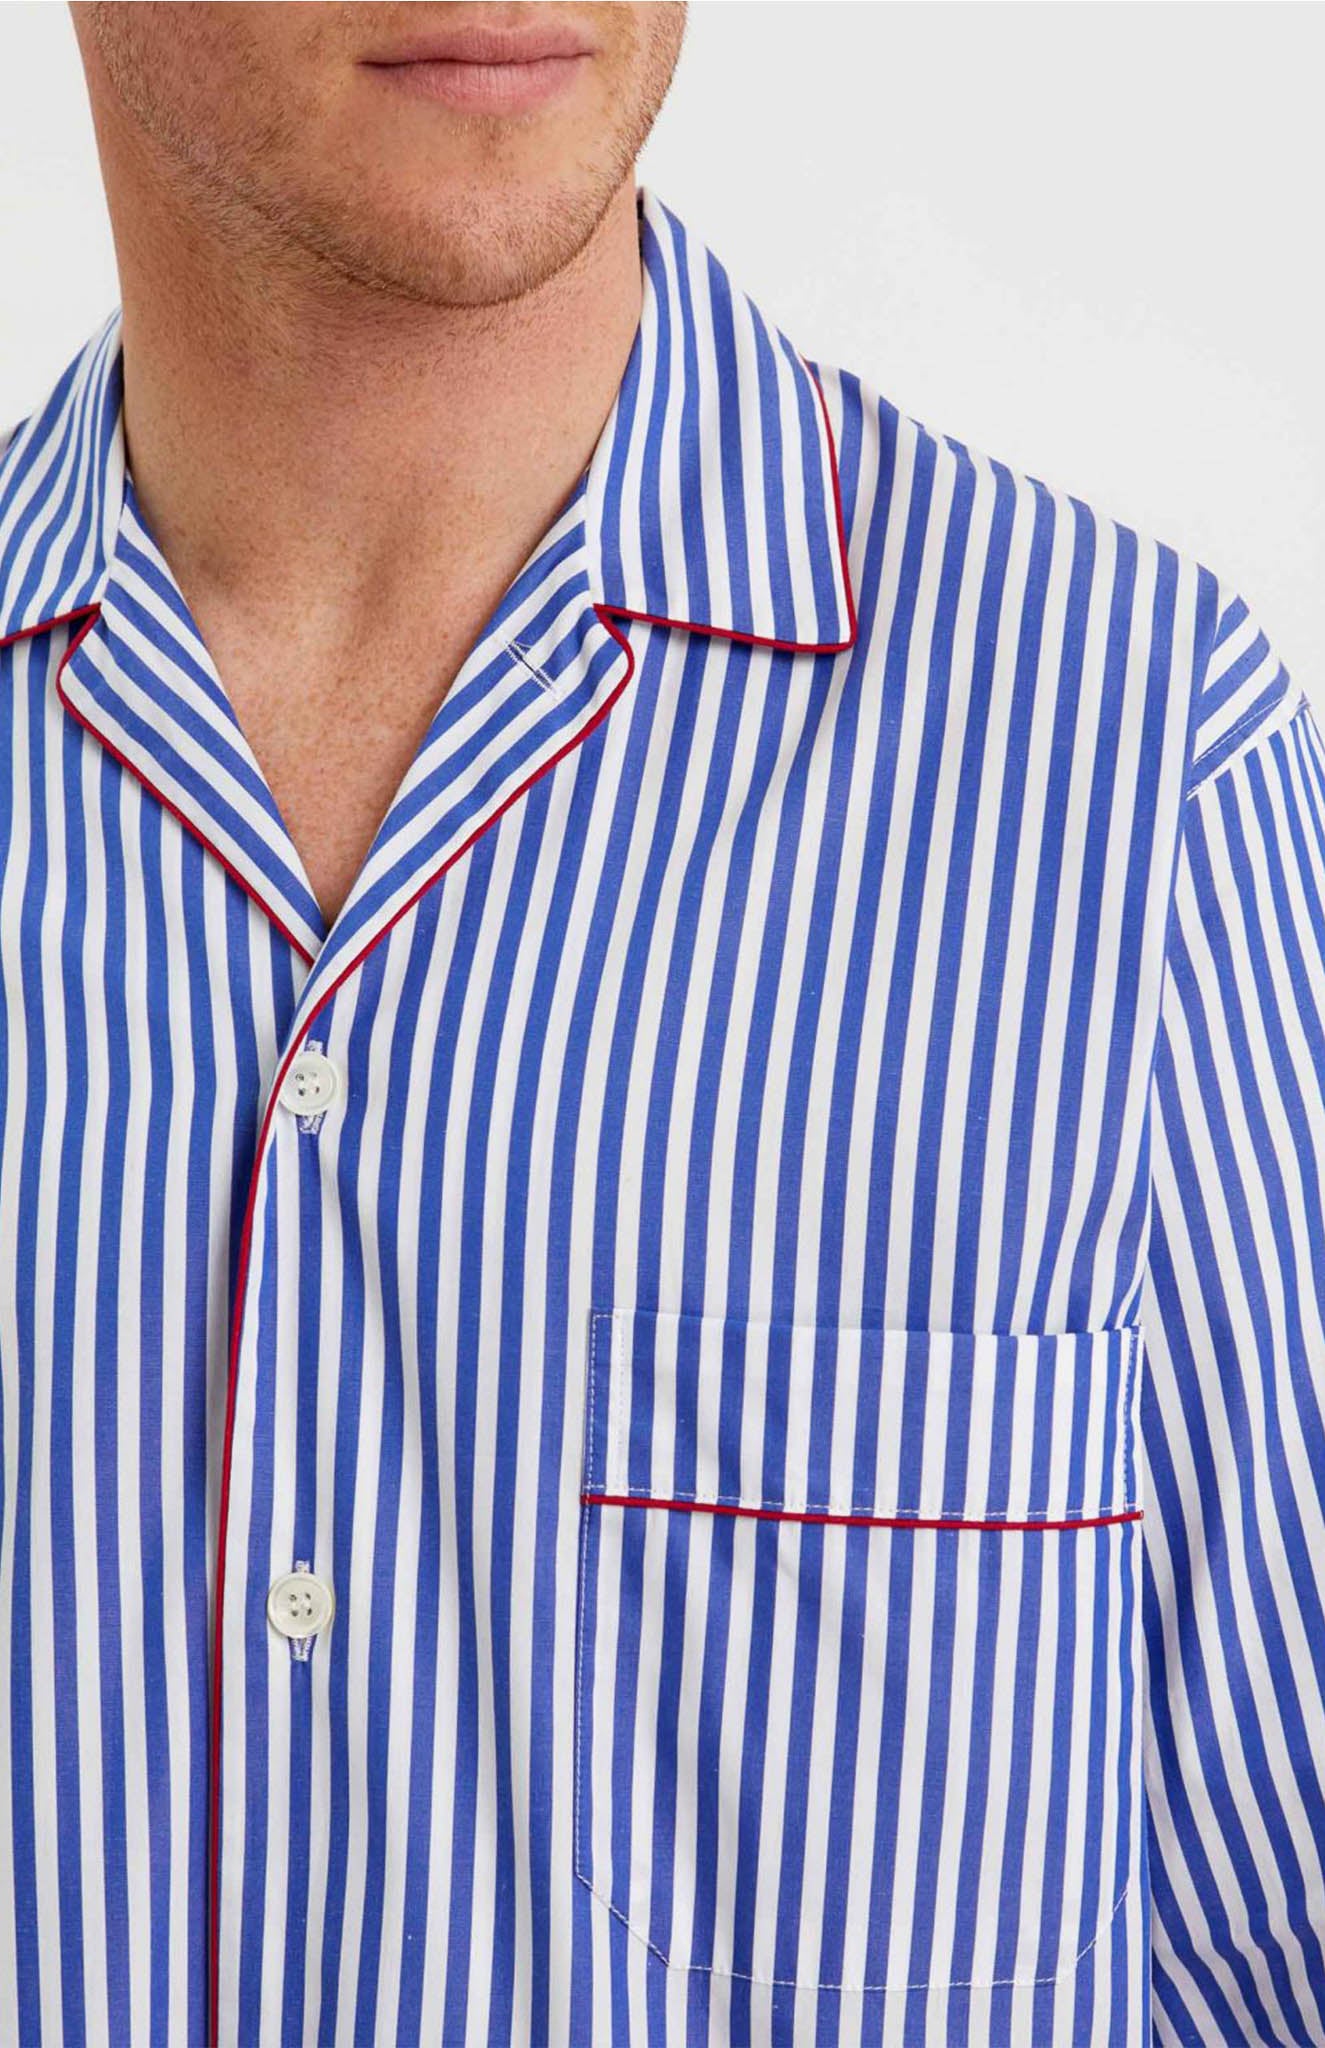 Sea Breeze Stripes | Lounge Wear Set | 100% Cotton | Luxeliv men's wear| sleepwear - blue and white stripes